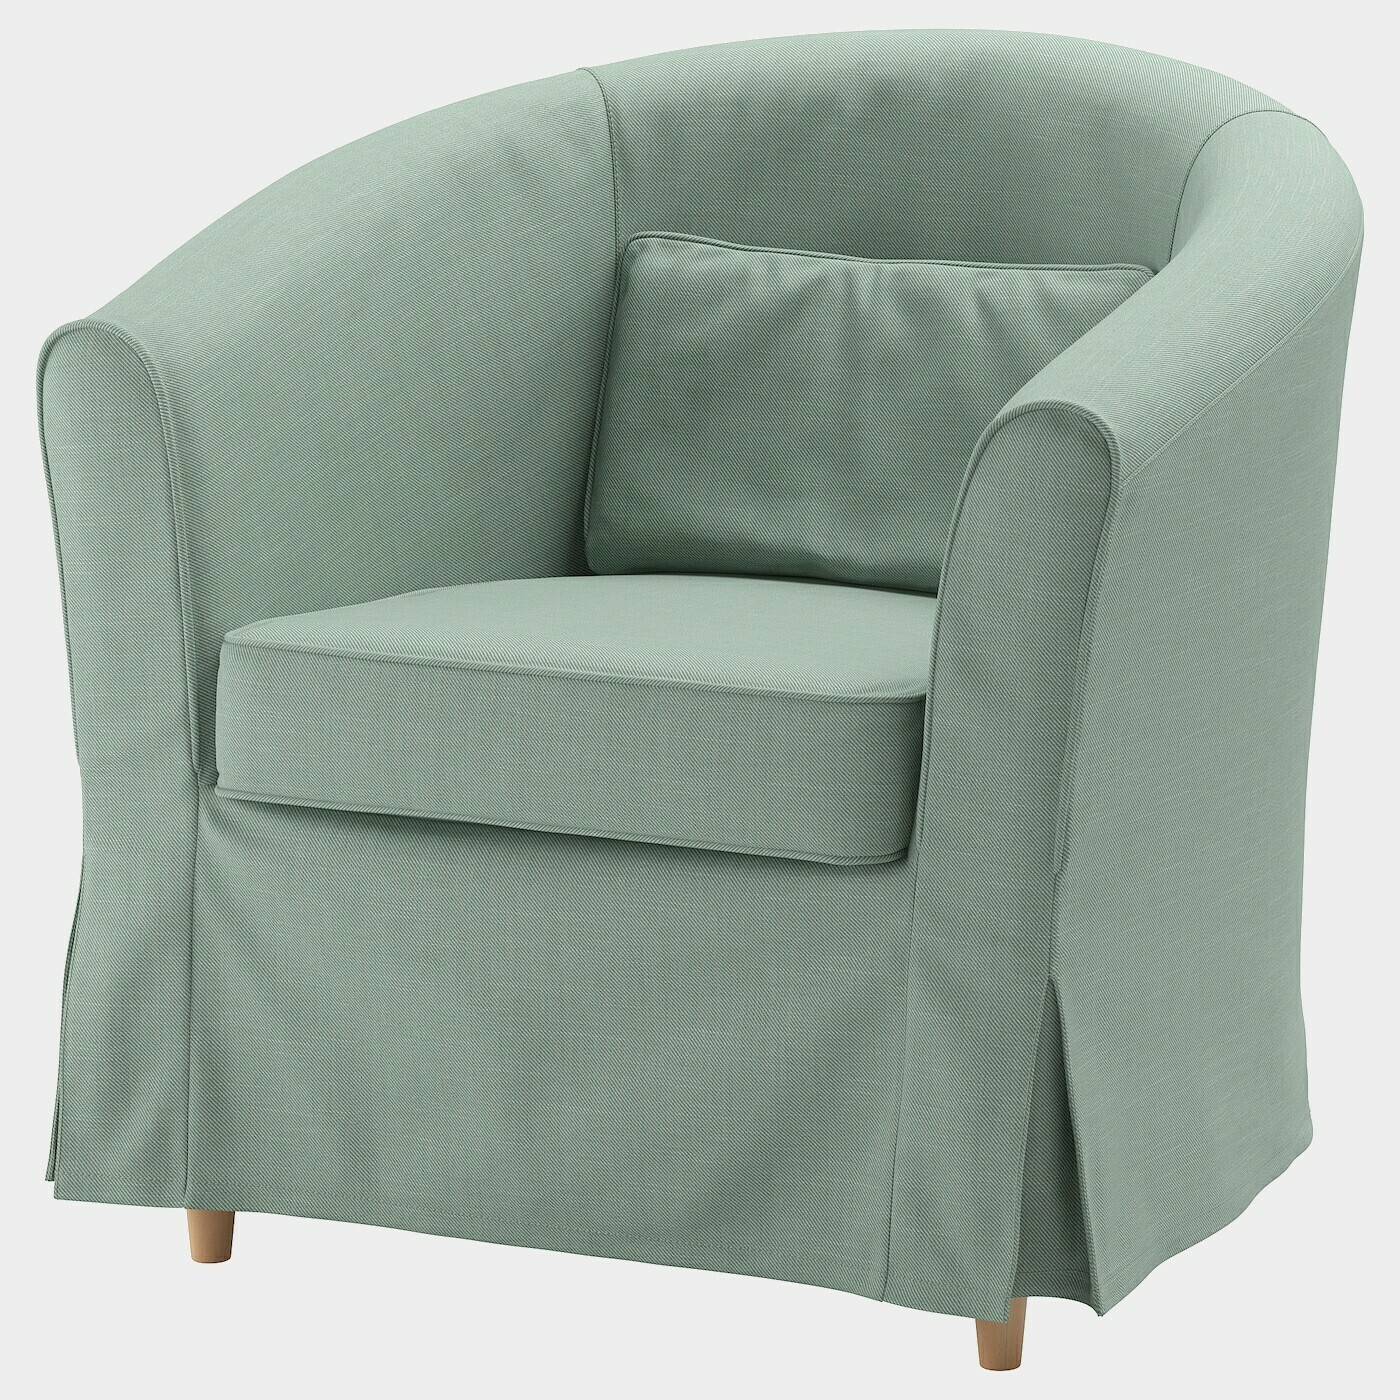 TULLSTA Bezug Sessel  - extra Bezüge - Möbel Ideen für dein Zuhause von Home Trends. Möbel Trends von Social Media Influencer für dein Skandi Zuhause.